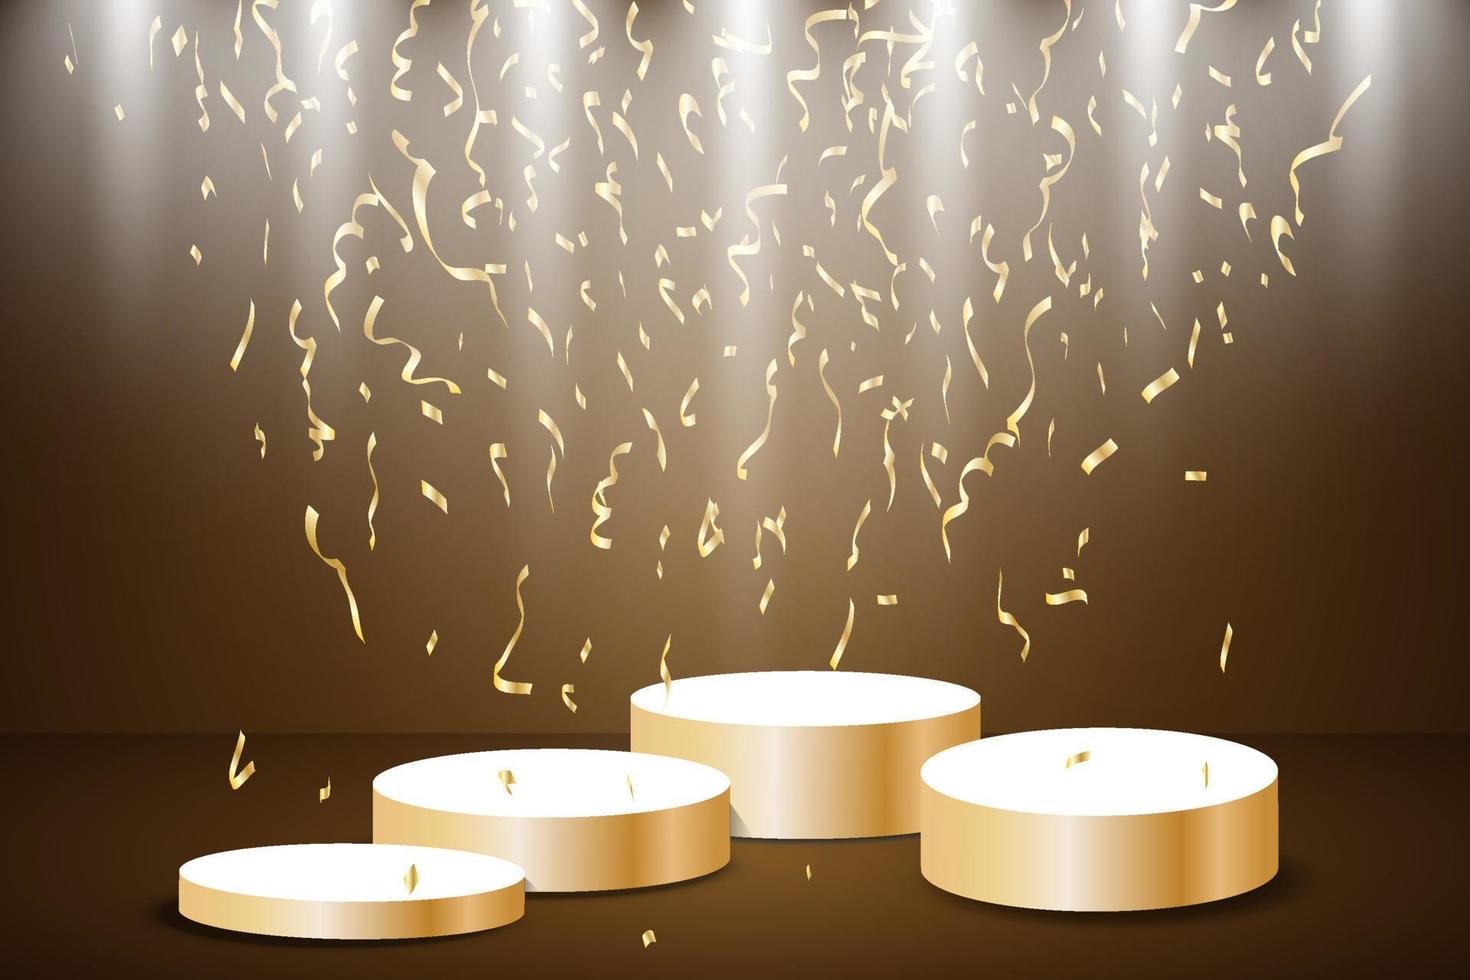 gyllene podium med en strålkastare på en mörk bakgrund, faller gyllene konfetti, först plats, berömmelse och popularitet. vektor illustration.